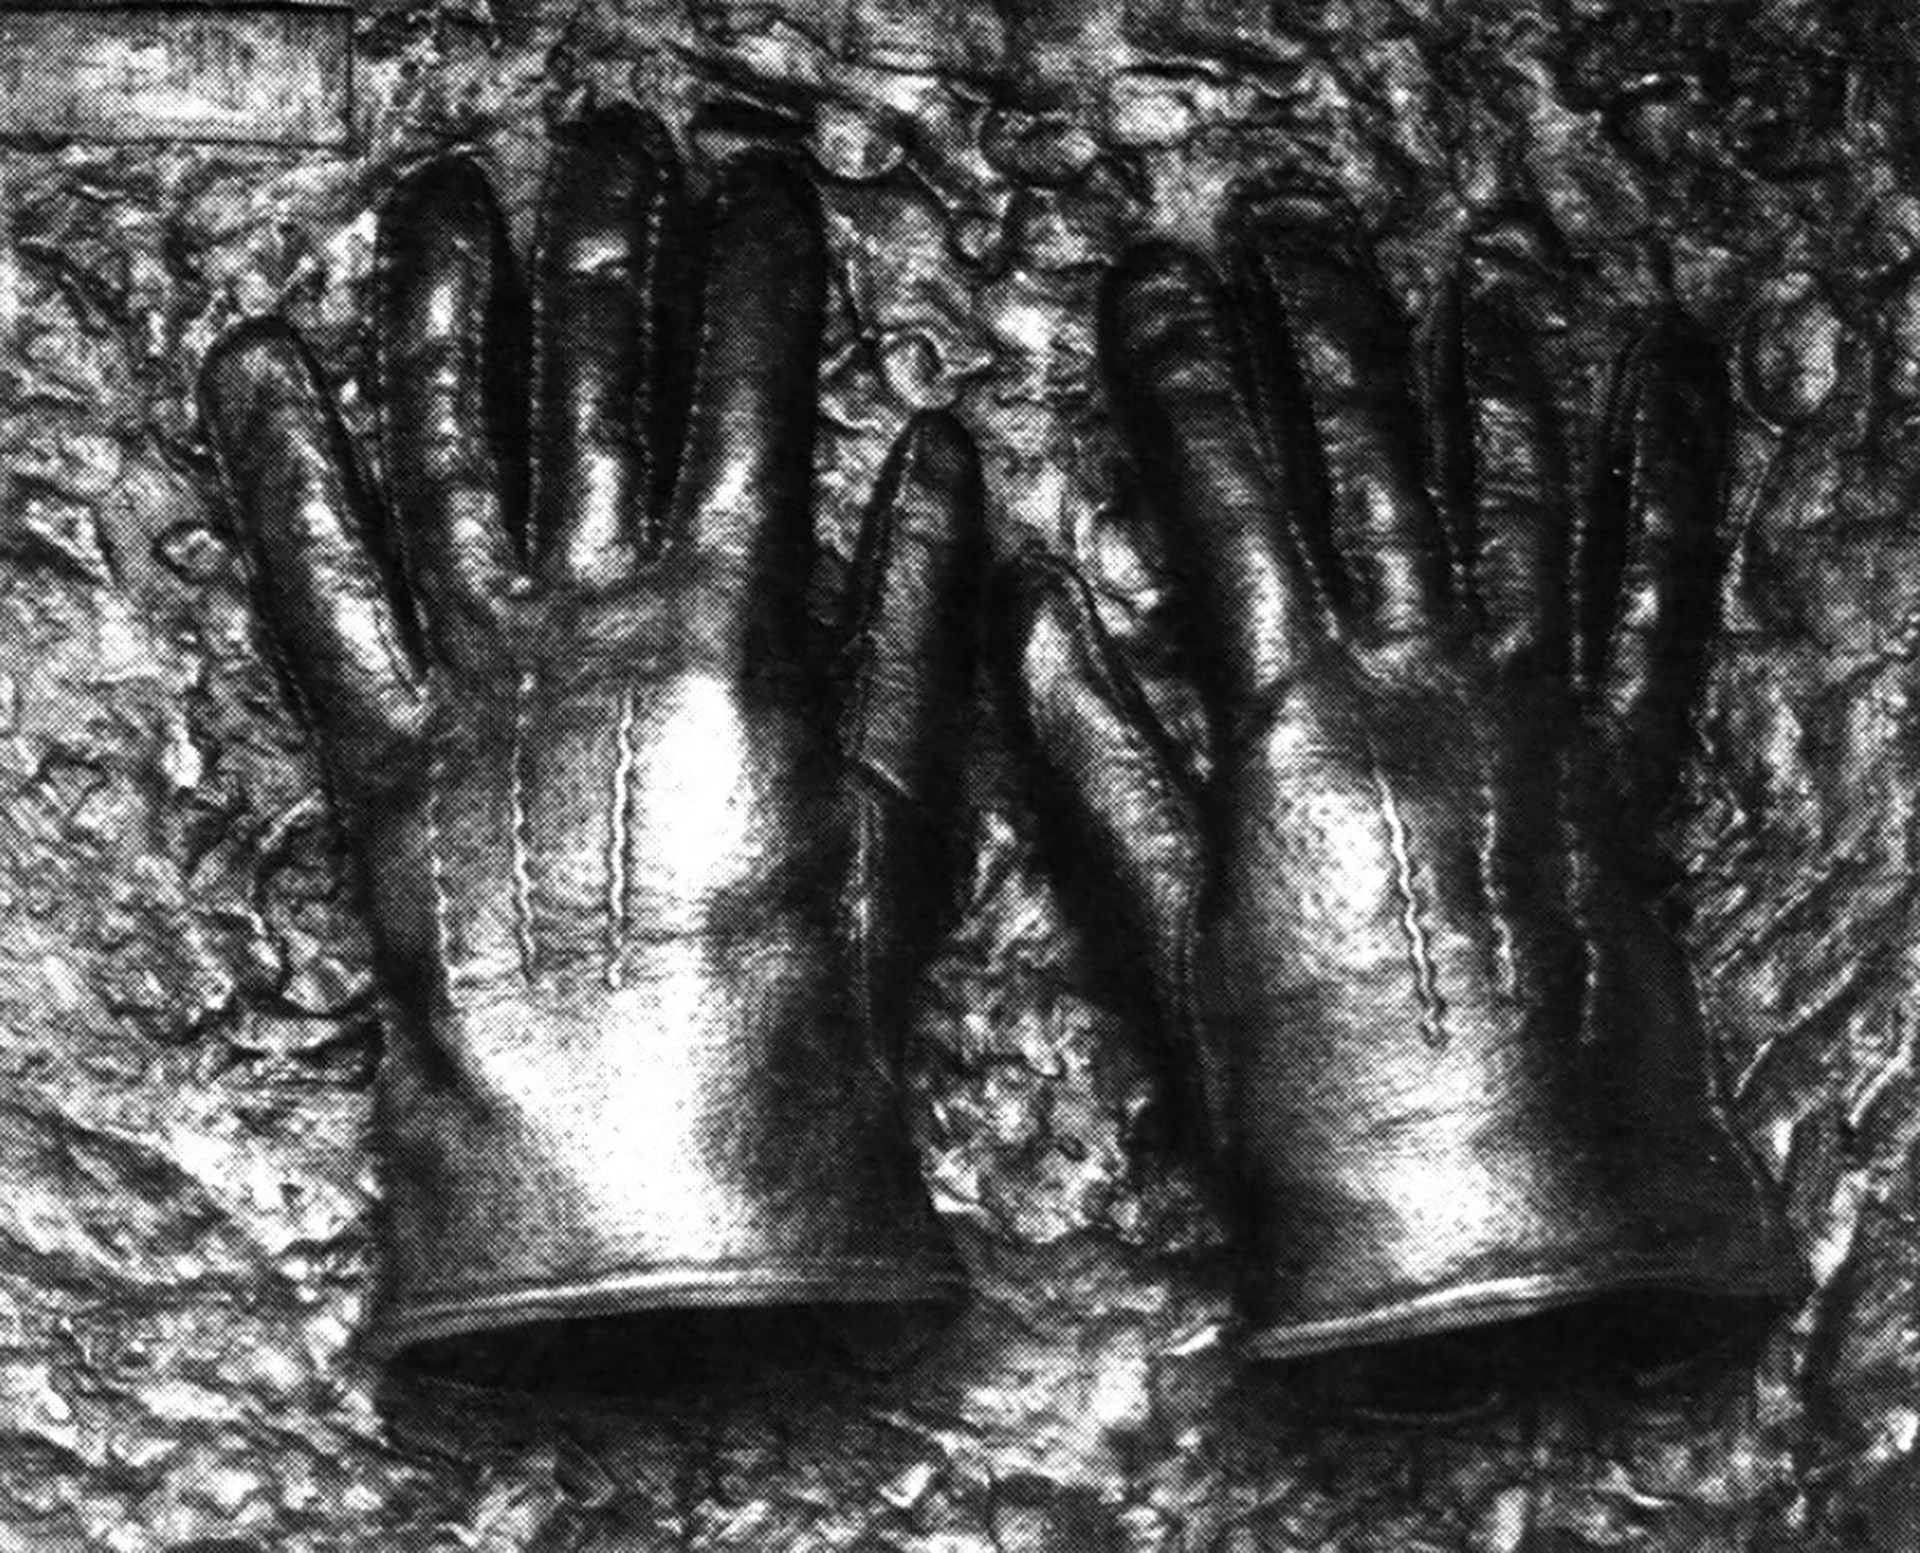 Los guantes que Malkin usó para secuestrar a Eichmann. “No quería tocar con mis manos al hombre que había enviado a la muerte a toda mi familia”. Esos guantes se exhiben hoy en el Museum of Jewish Heritage de New York